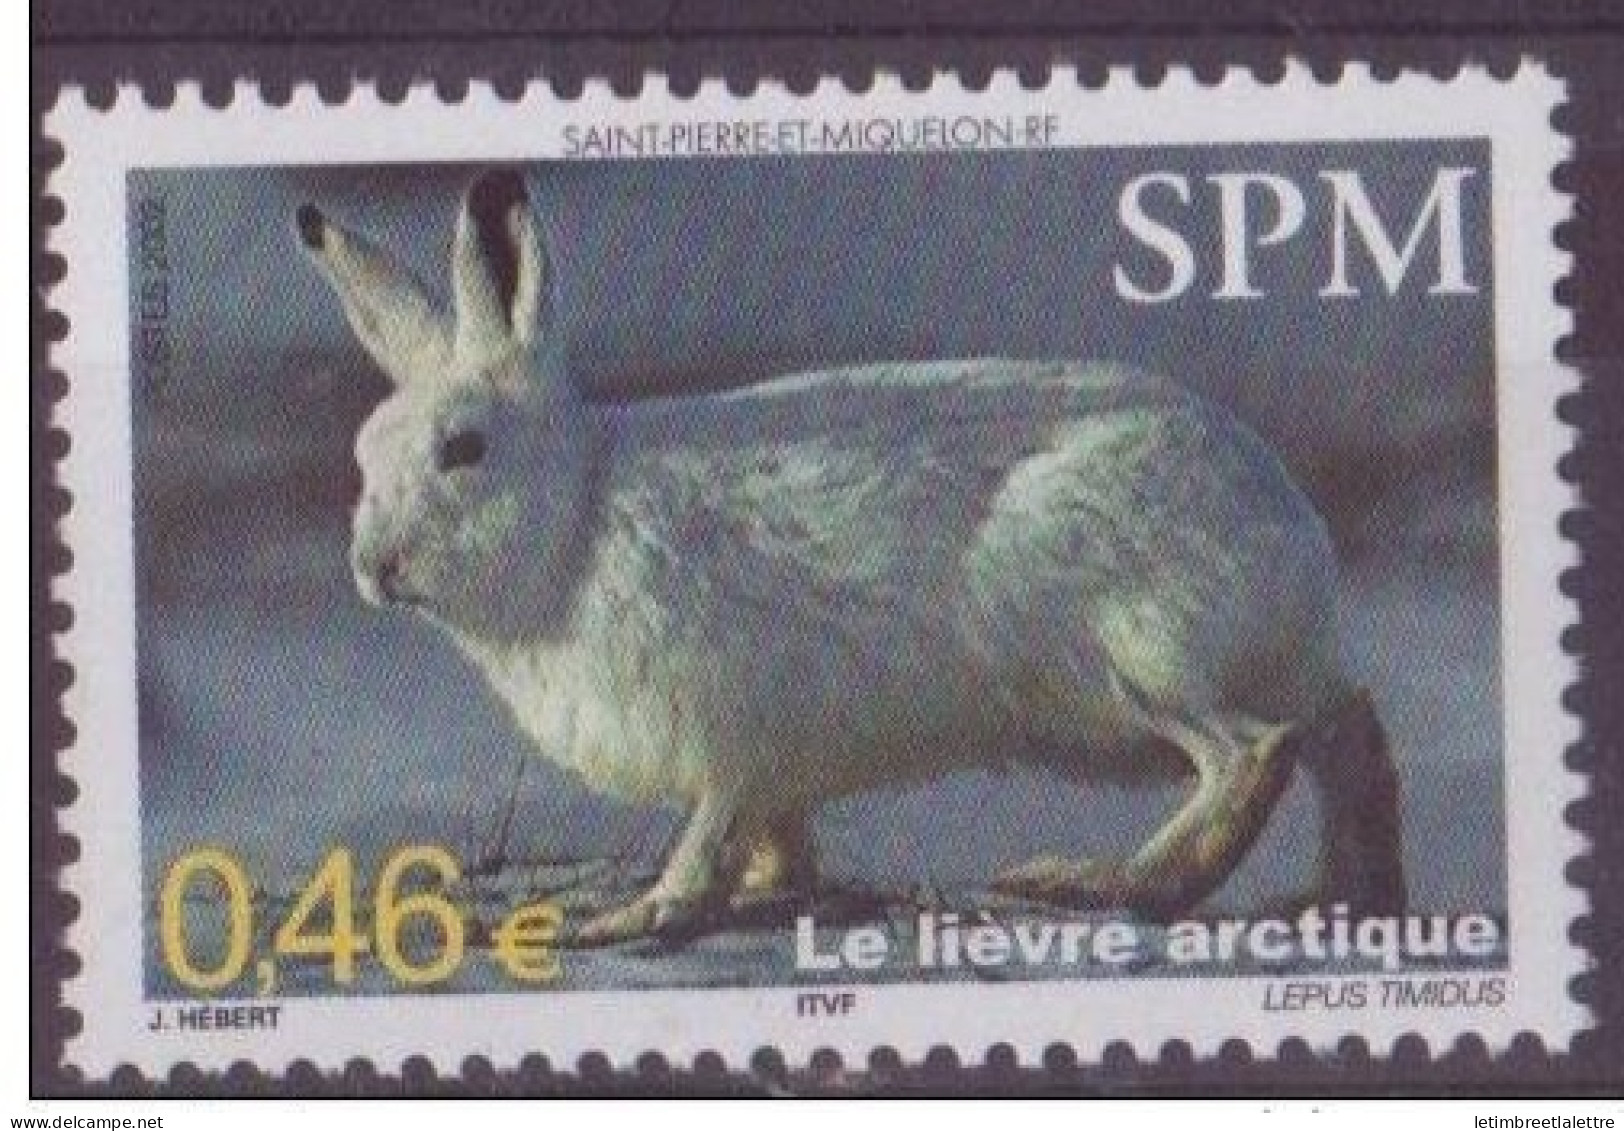 Saint Pierre Et Miquelon - YT N° 782 ** - Neuf Sans Charnière - 2002 - Neufs